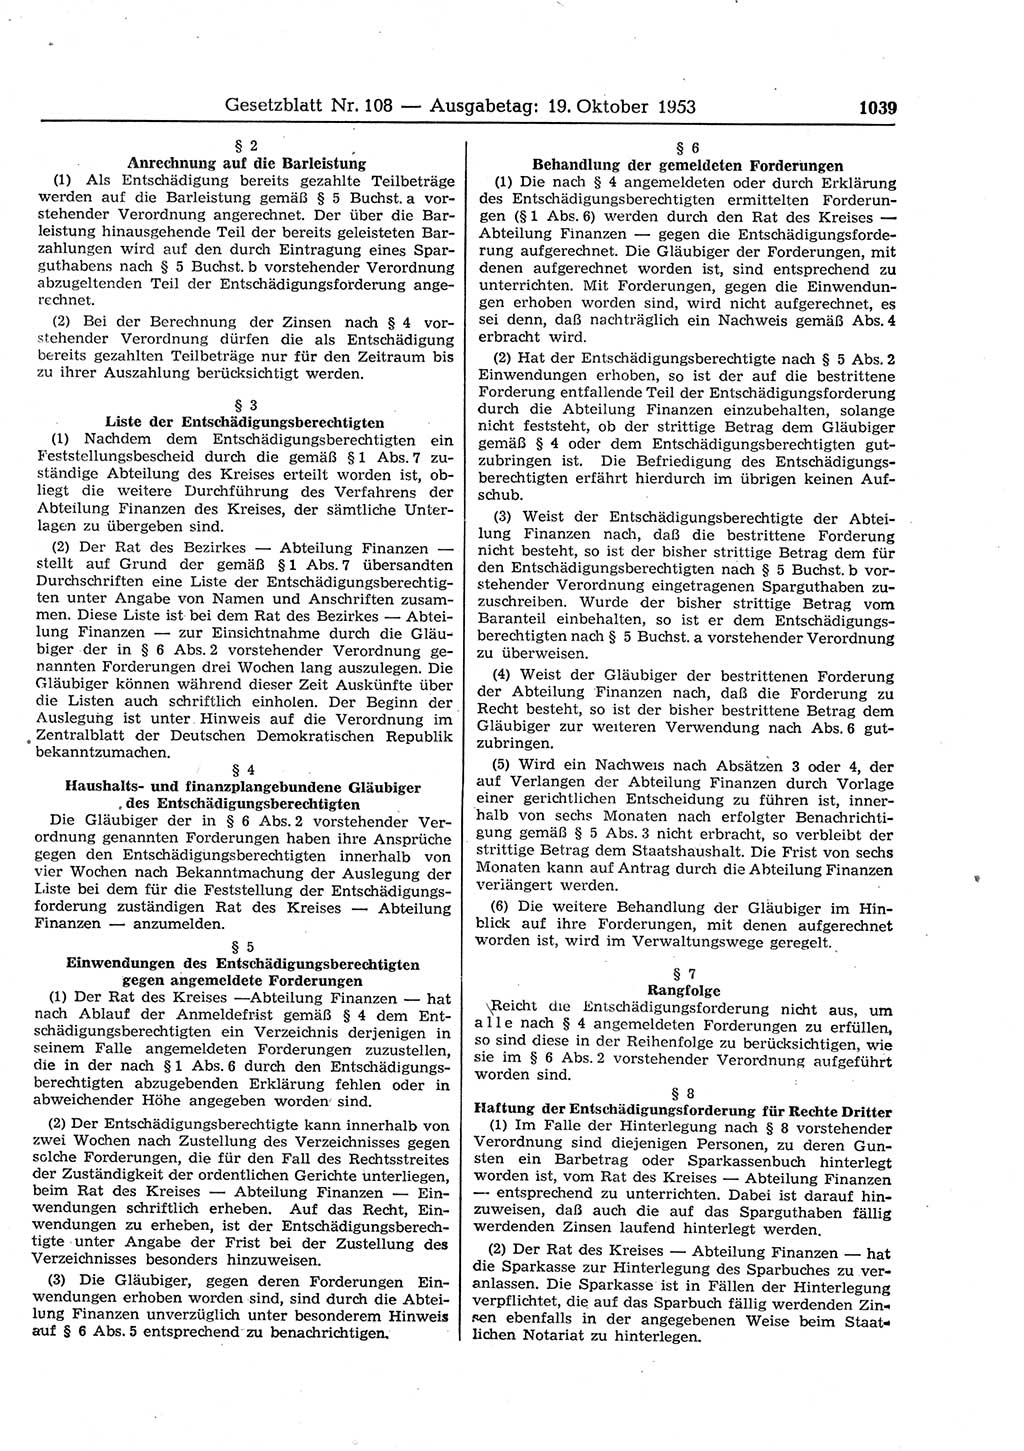 Gesetzblatt (GBl.) der Deutschen Demokratischen Republik (DDR) 1953, Seite 1039 (GBl. DDR 1953, S. 1039)